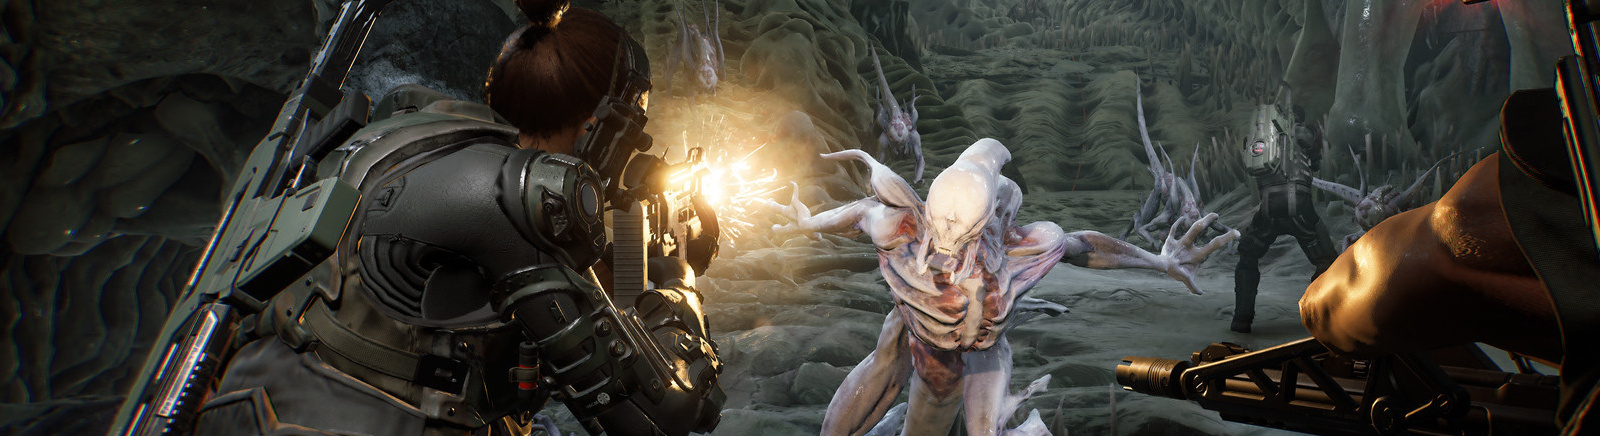 Дата выхода Aliens: Fireteam Elite - Pathogen  на PC, PS5 и Xbox Series X/S в России и во всем мире